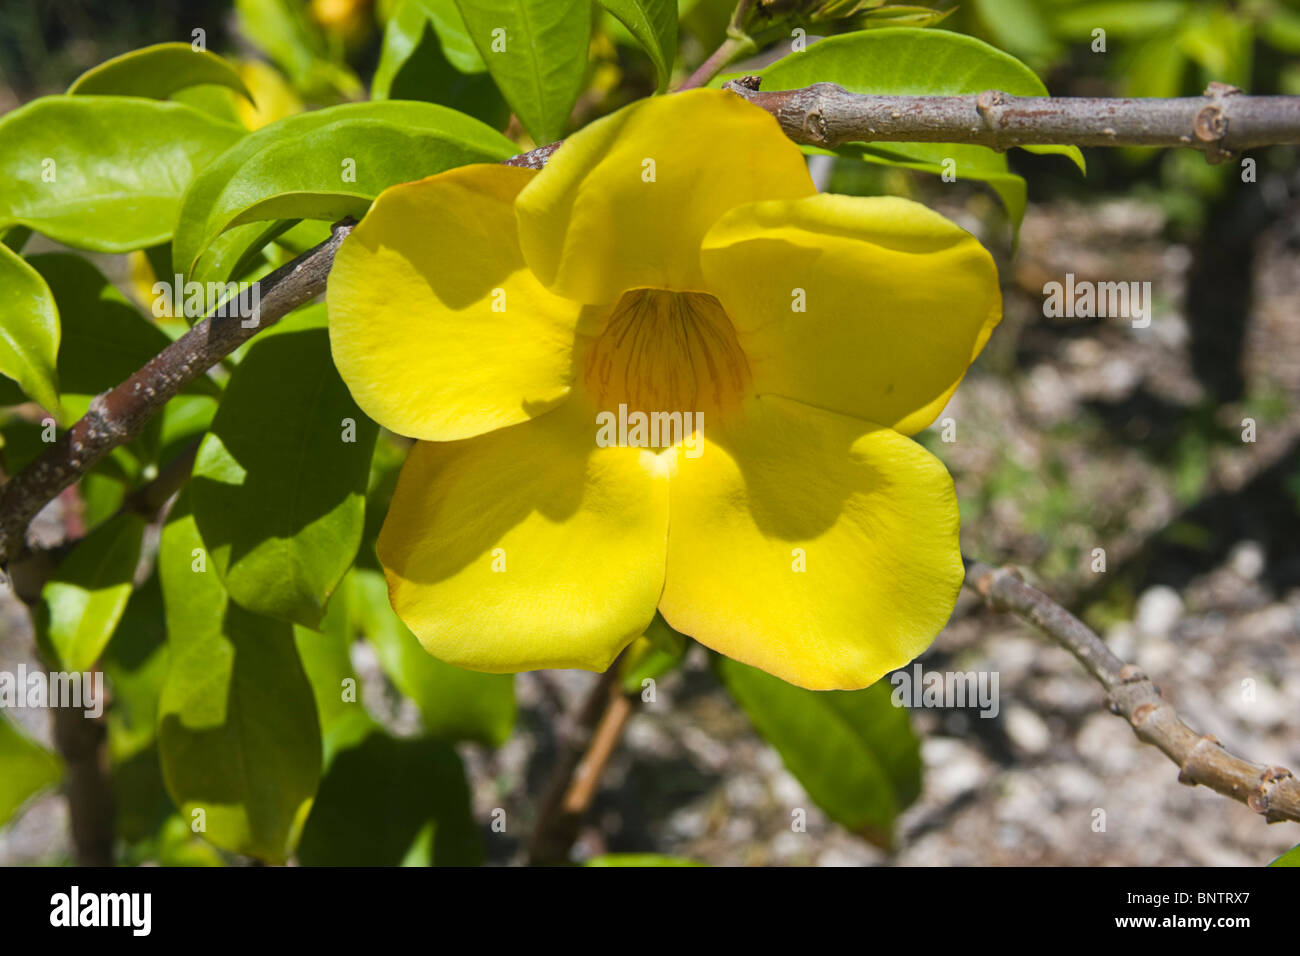 Golden trumpet flower (Allamanda cathartica) growing on the Yucatan Peninsula, Mexico. Stock Photo